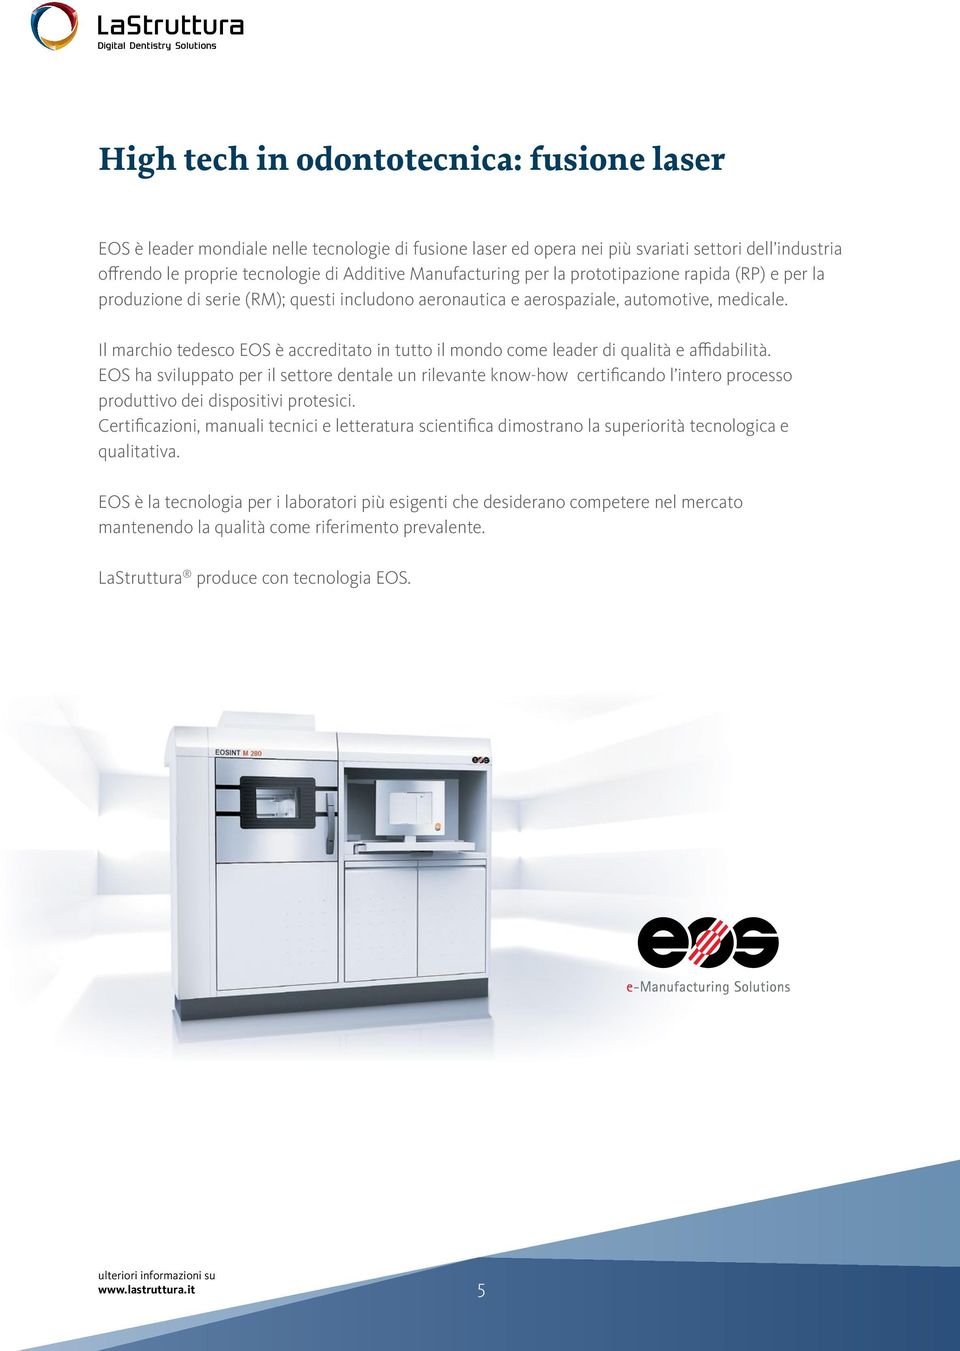 Il marchio tedesco EOS è accreditato in tutto il mondo come leader di qualità e affidabilità.